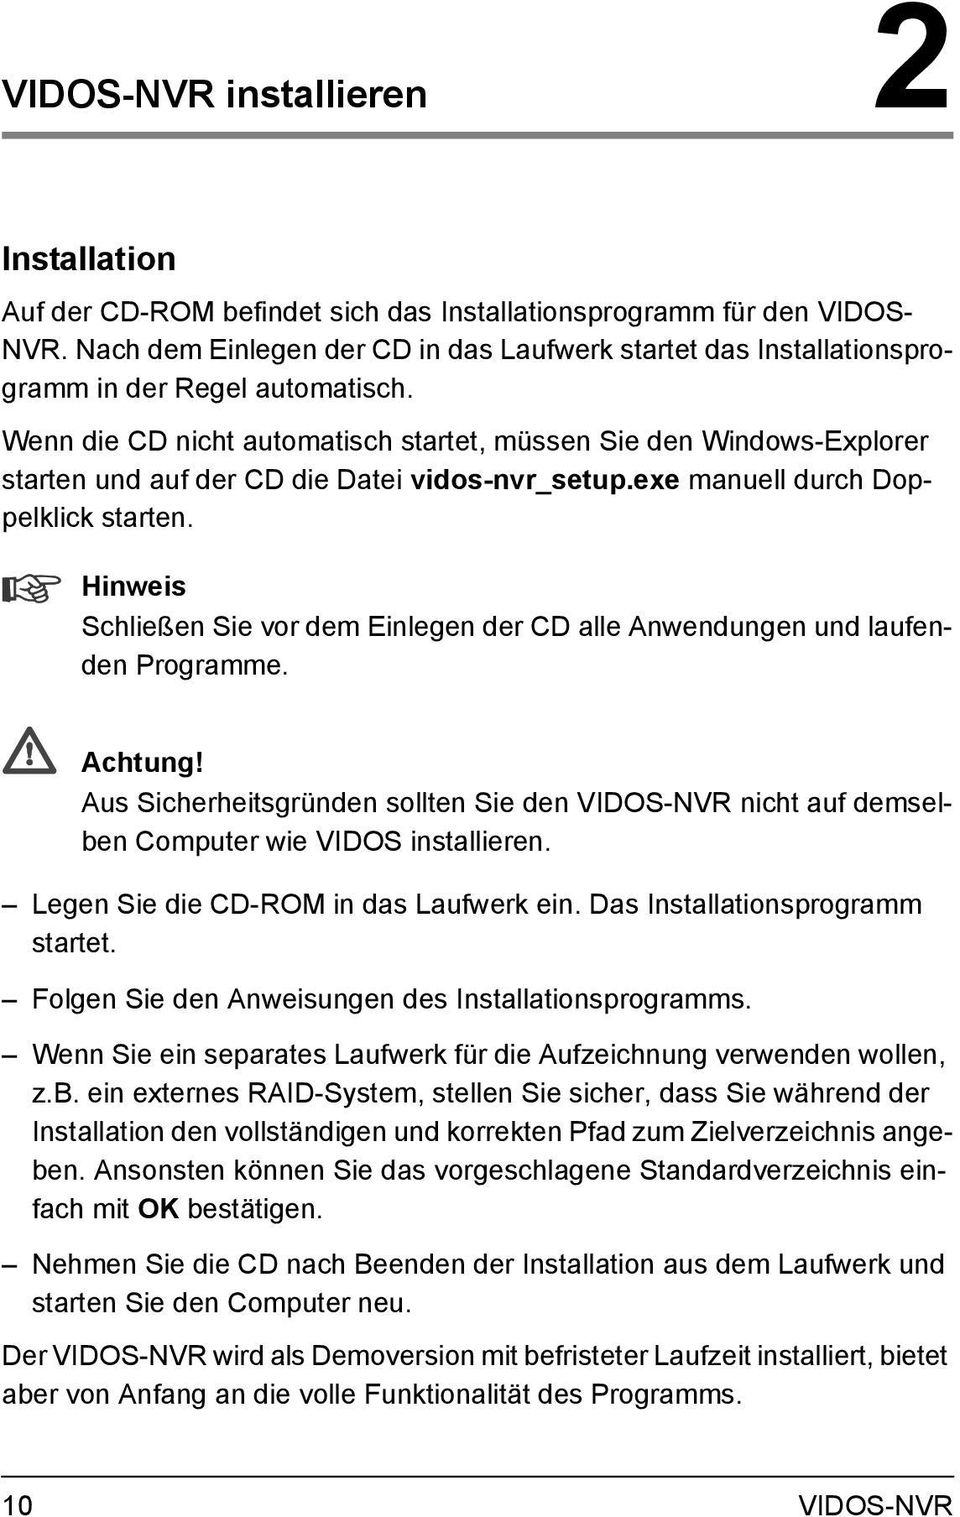 Wenn die CD nicht automatisch startet, müssen Sie den Windows-Explorer starten und auf der CD die Datei vidos-nvr_setup.exe manuell durch Doppelklick starten.